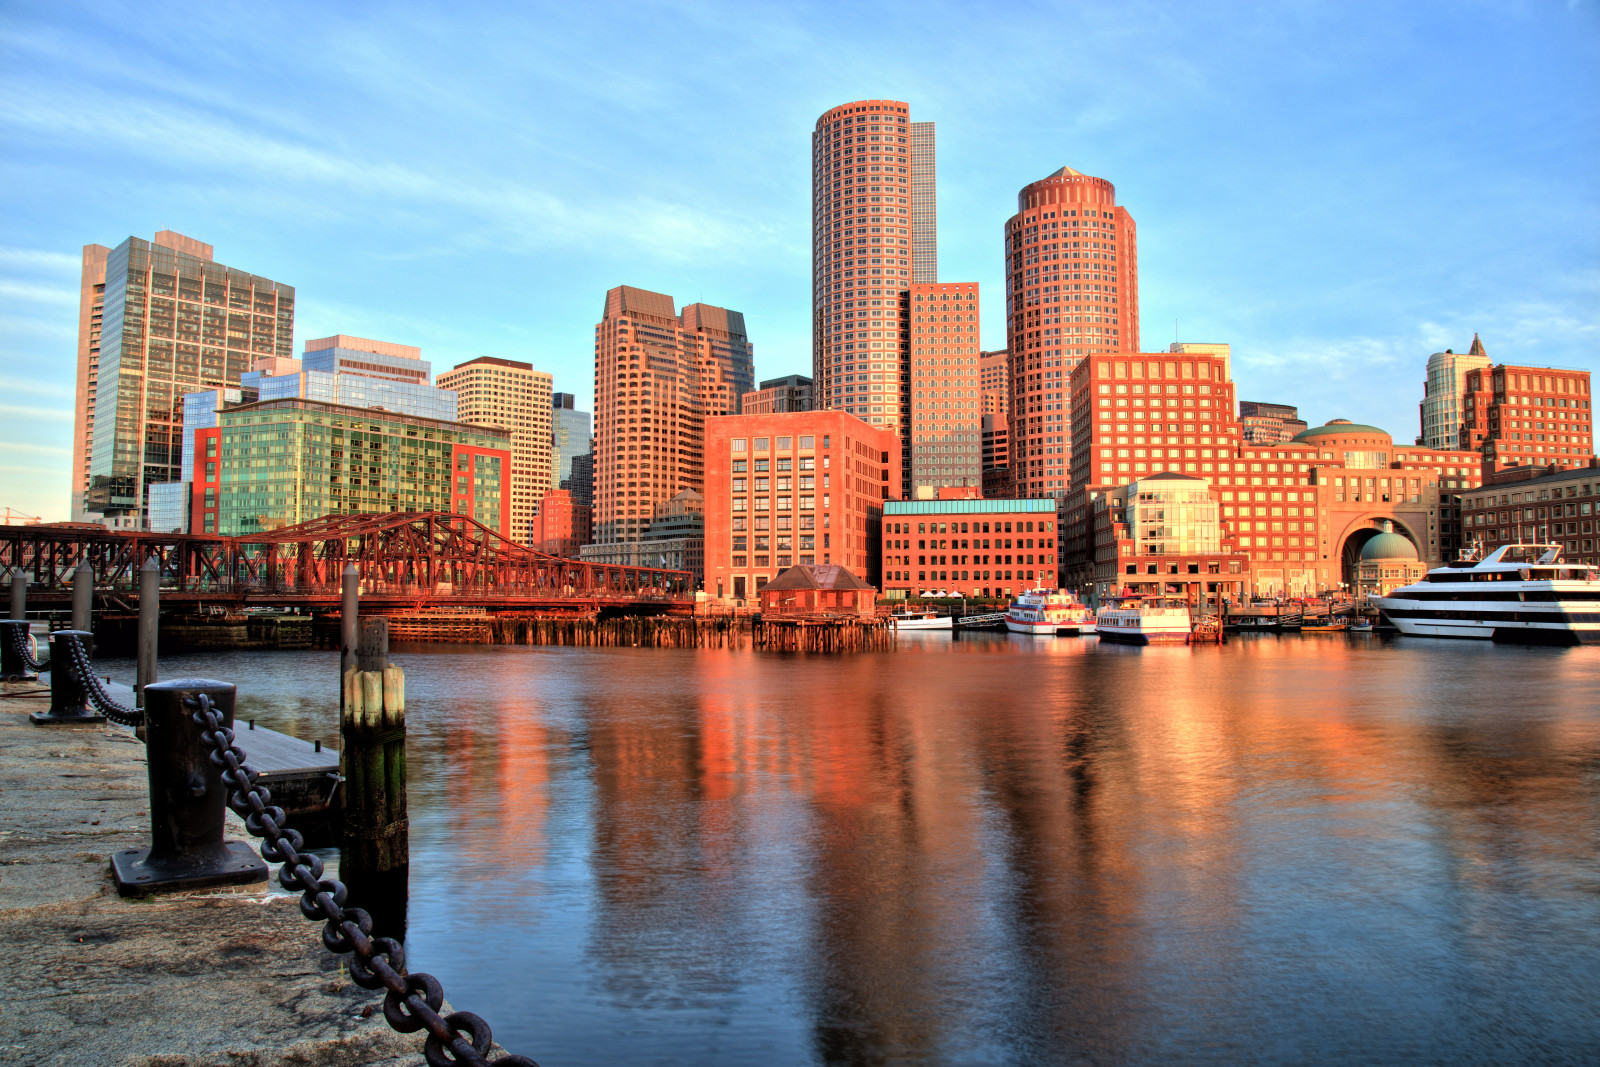 Vịnh, Cầu, xây dựng, đi chơi, Hải cảng, Boston, Massachusetts, Cảng Boston